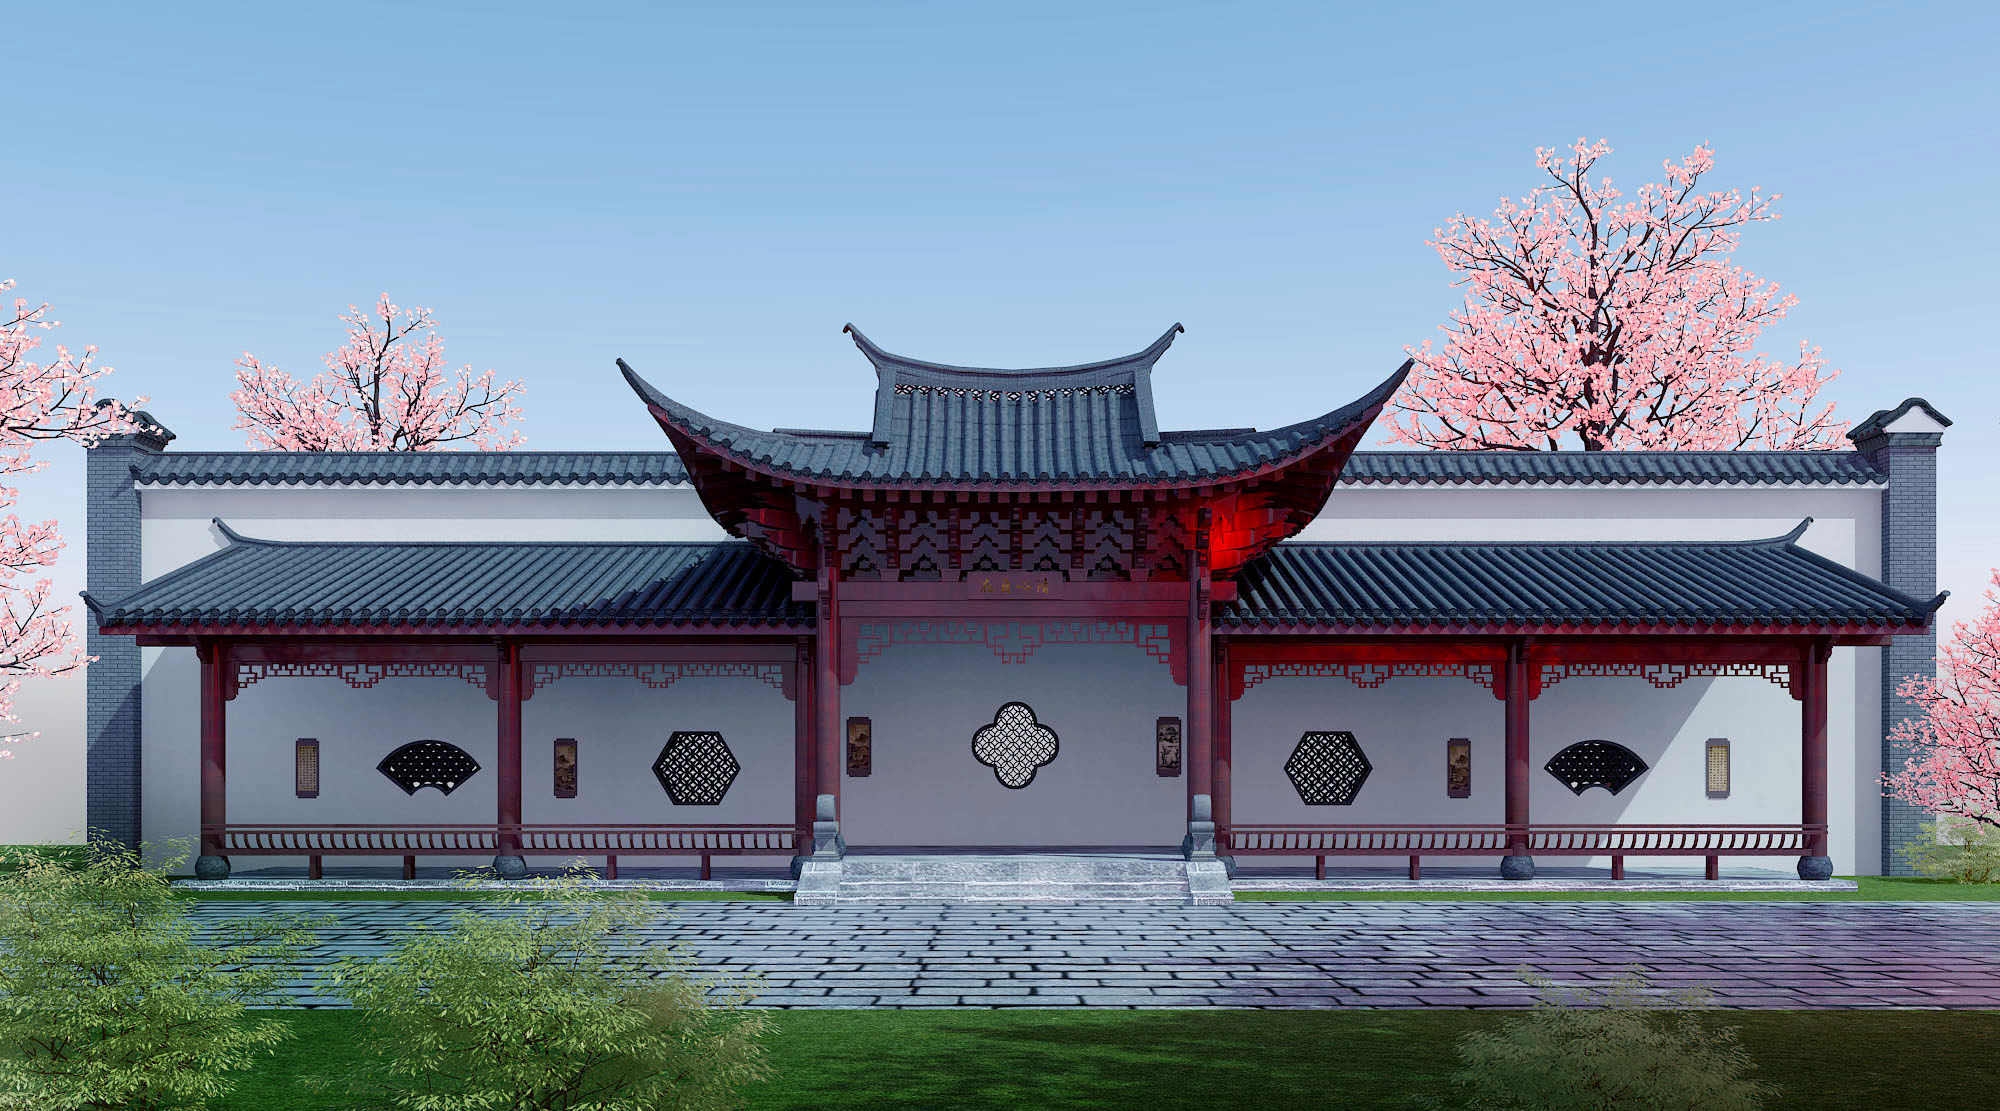 中式古建筑3d模型下载